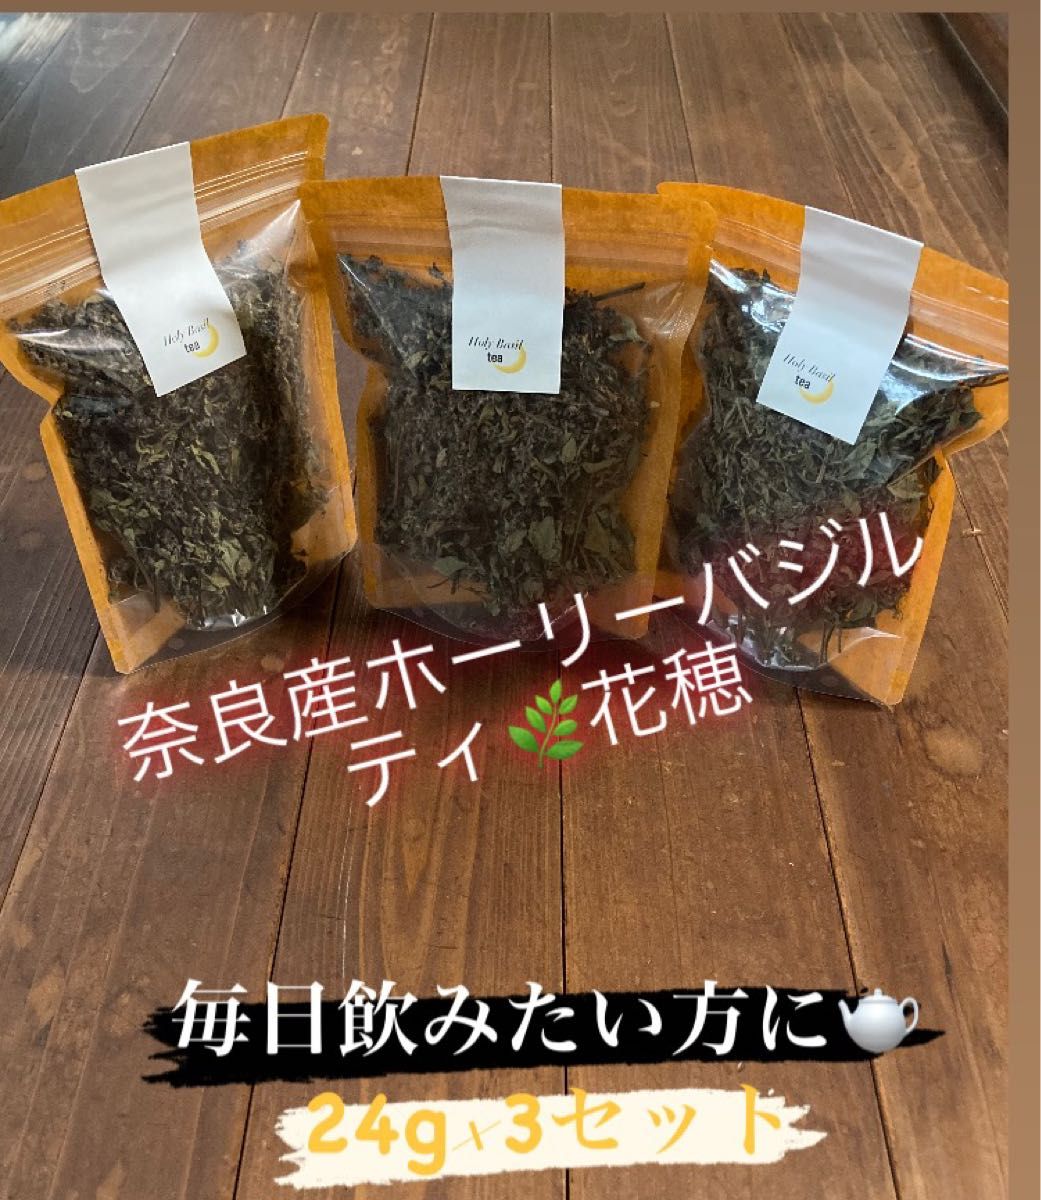 ホーリーバジルティ(トゥルシーティ)奈良県産 24g×3袋 柔らかい花穂 健康茶